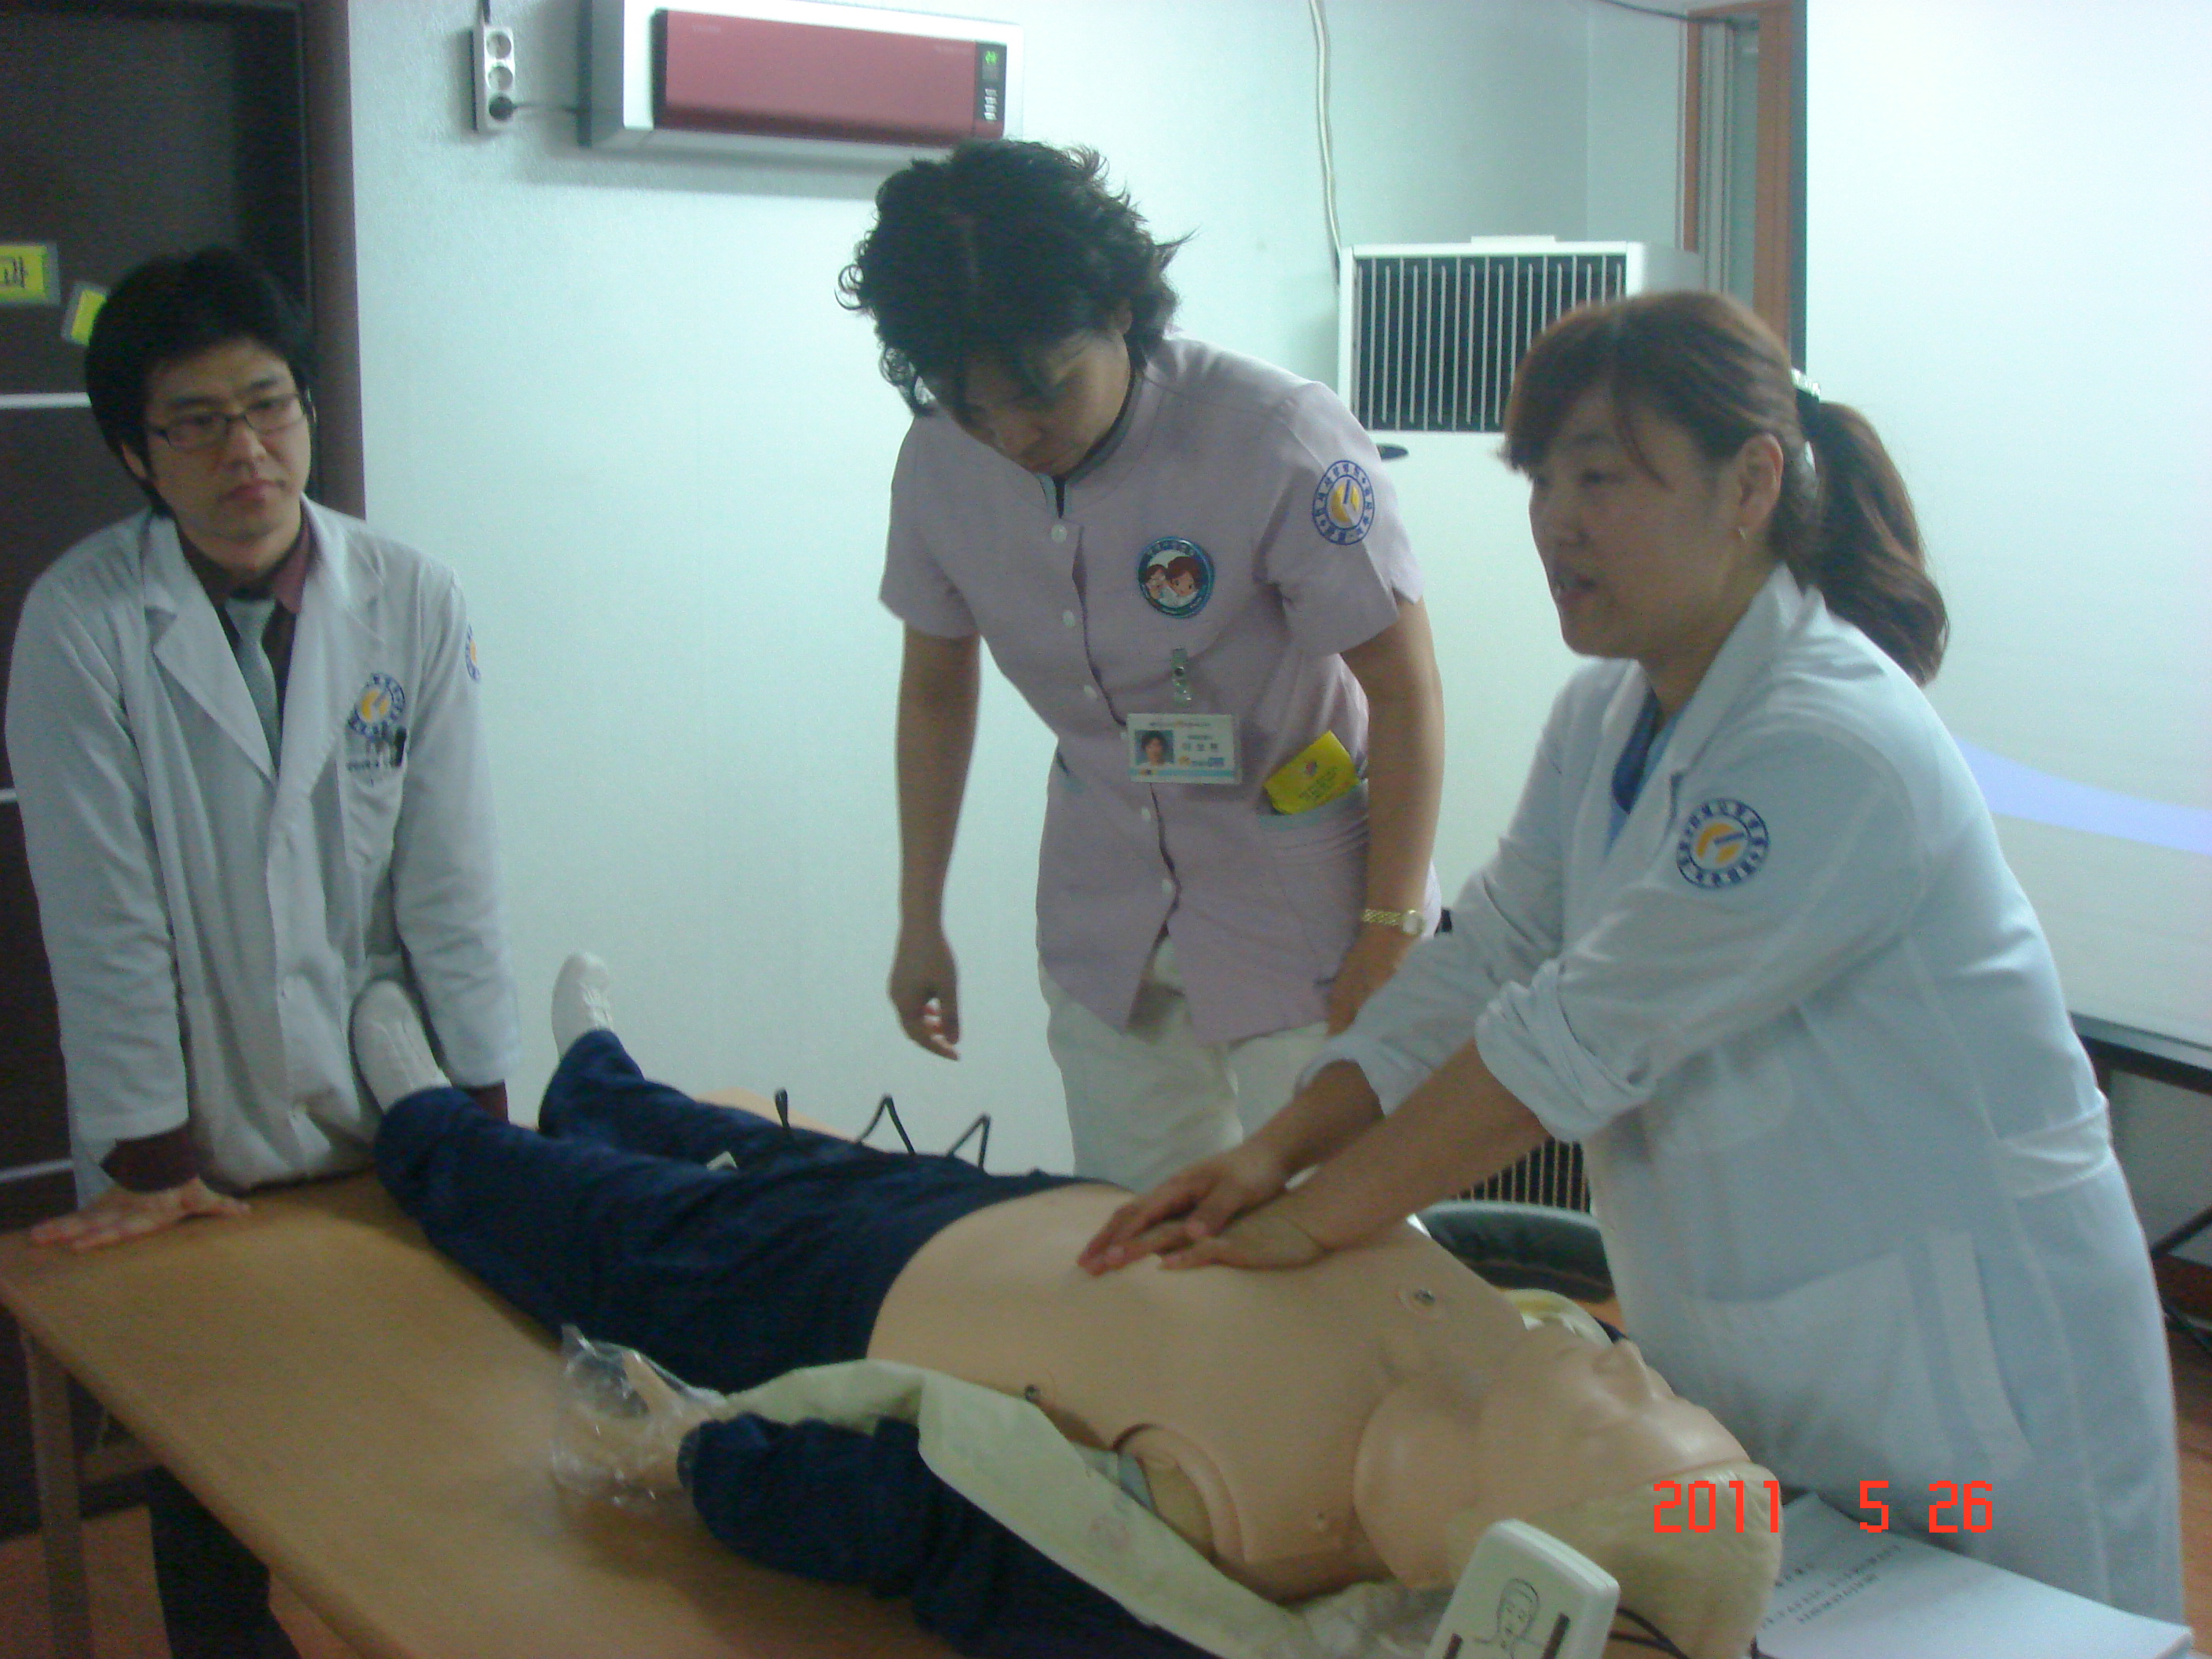 [강북점] 2011년 5월 26일 - 전직원 직무교육 실시 (심폐소생술, CPR) 게시글의 7번째 첨부파일입니다.